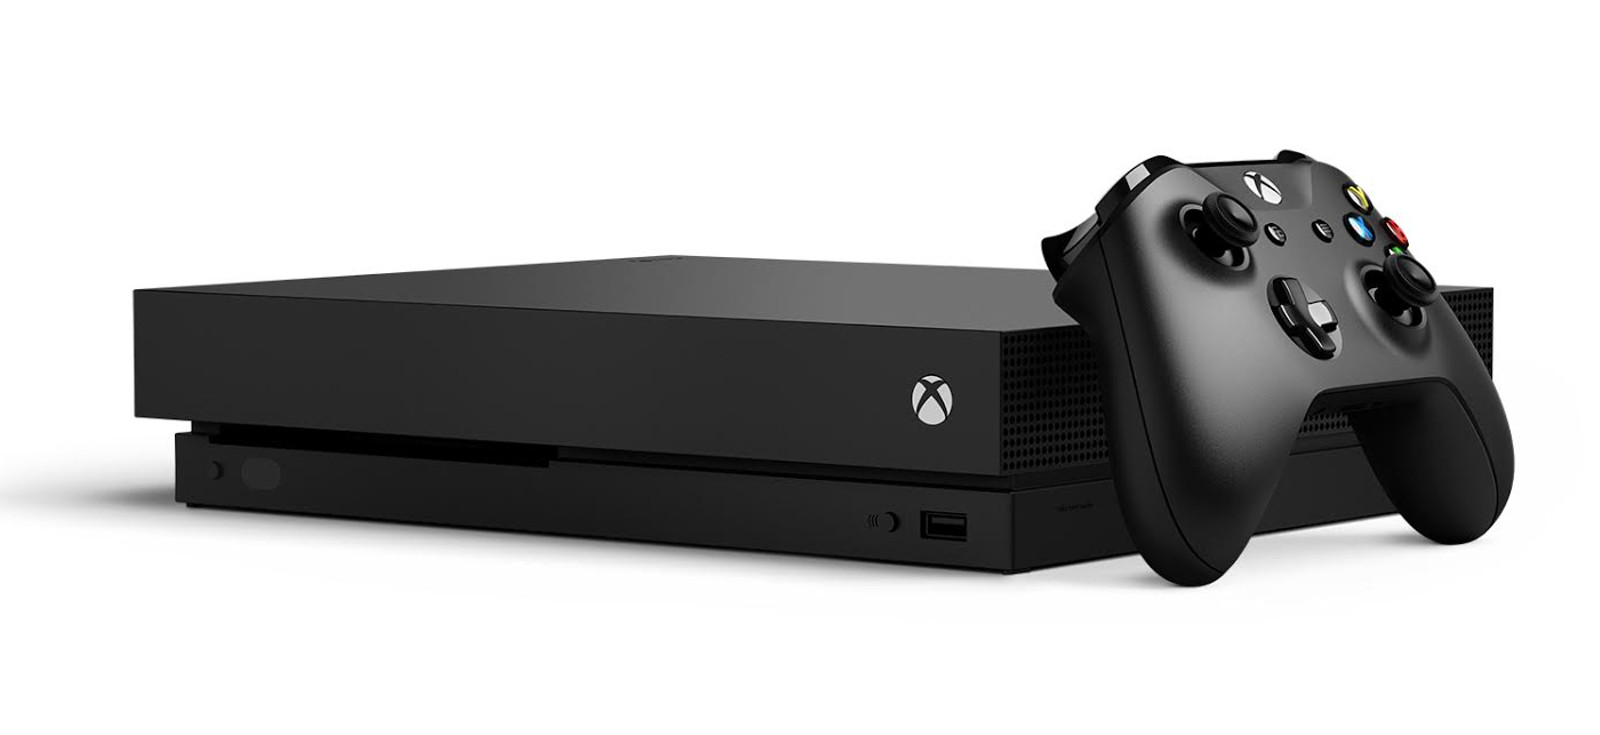 PS4 Pro ou Xbox One X? Veja aqui o comparativo de console Top de linha